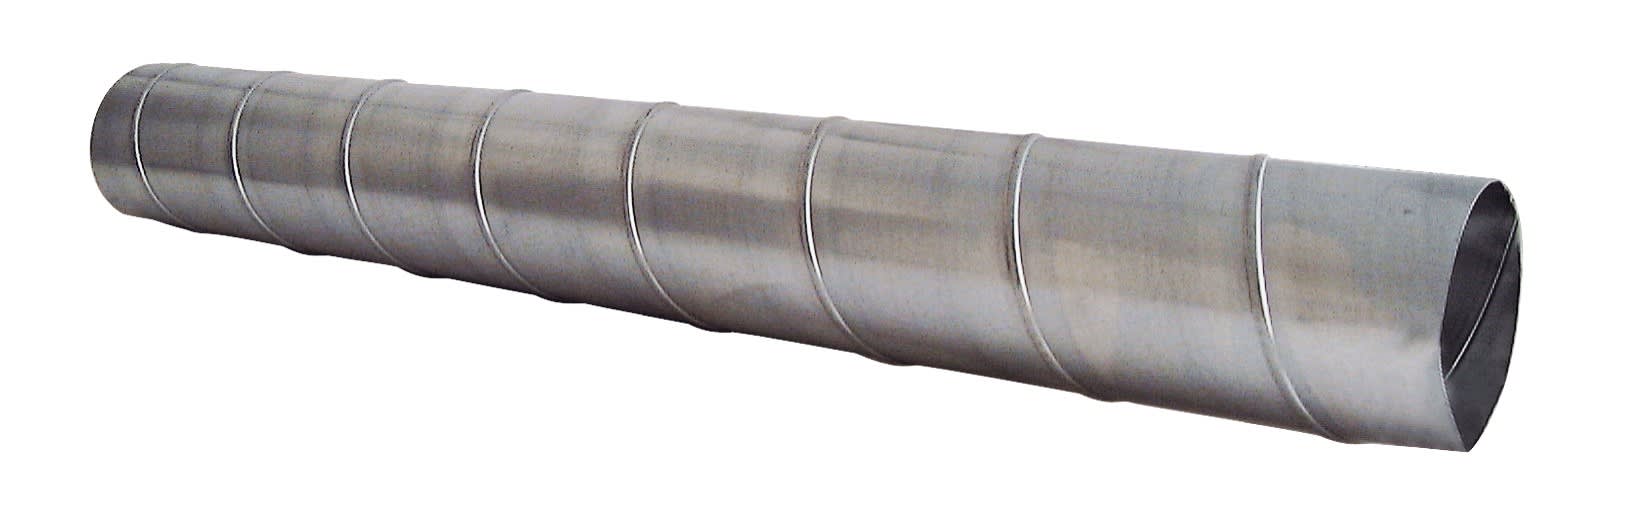 S&P - Conduit spiralé acier galvanisé, D 125 mm, longueur 1 m